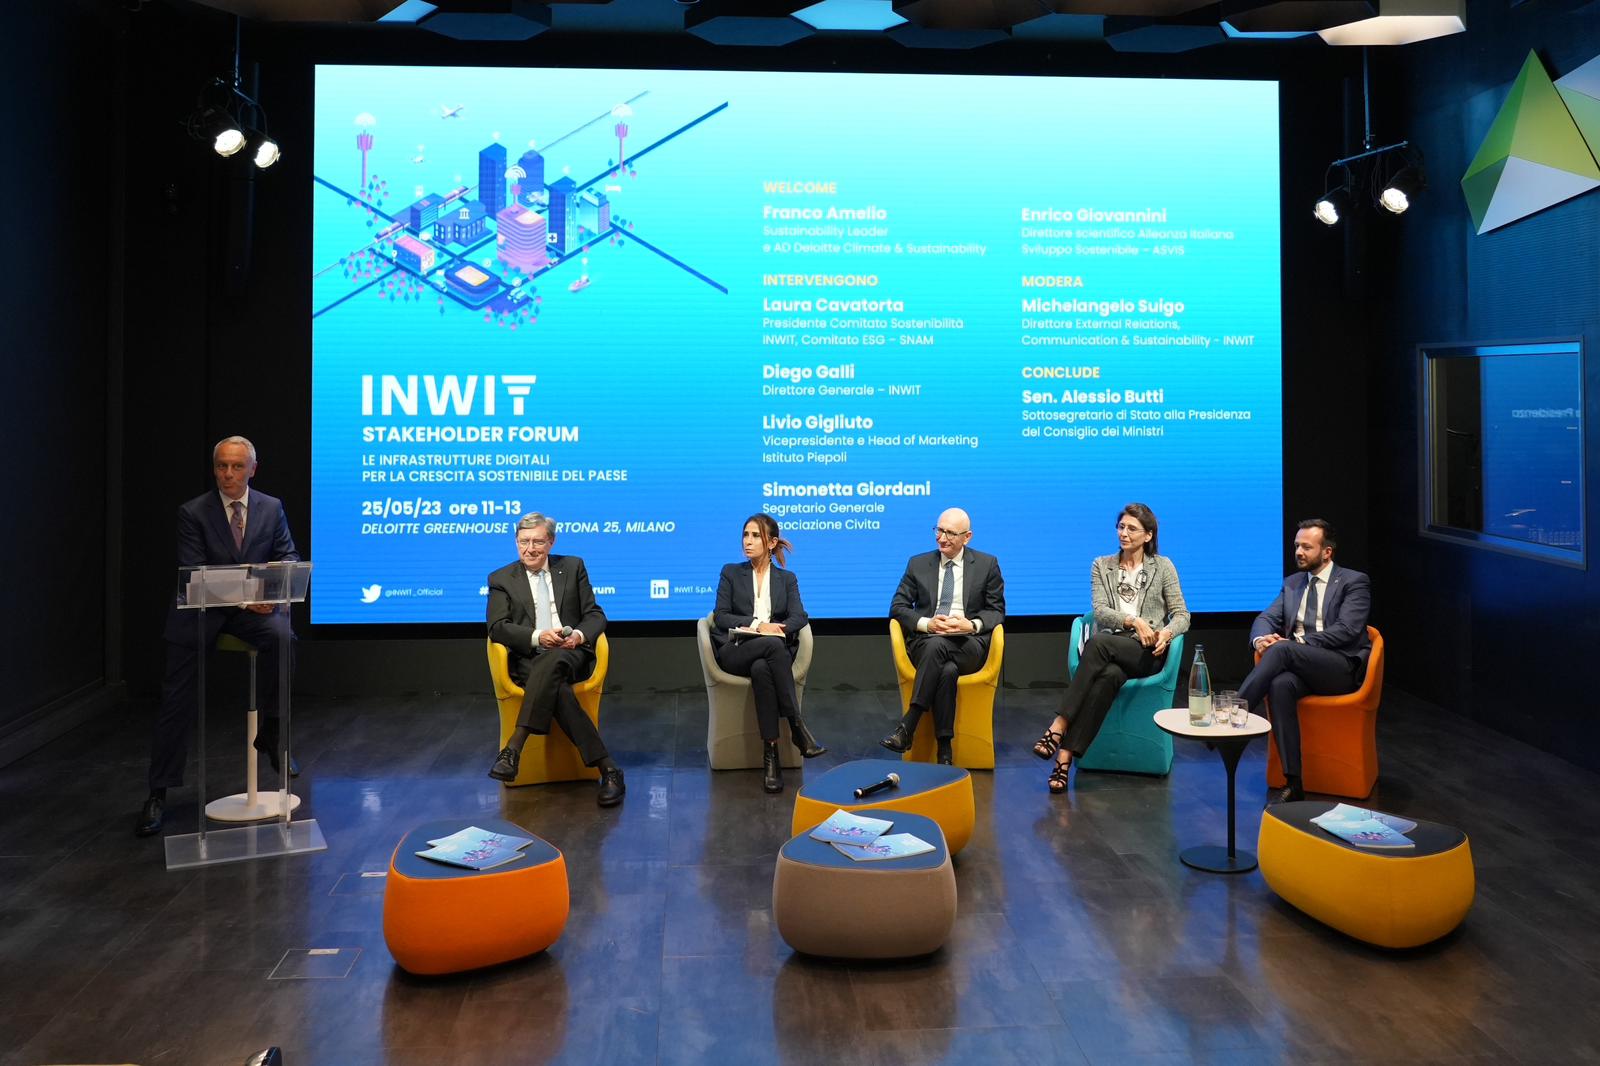 INWIT Stakeholder Forum. Infrastrutture digitali per la crescita sostenibile del Paese